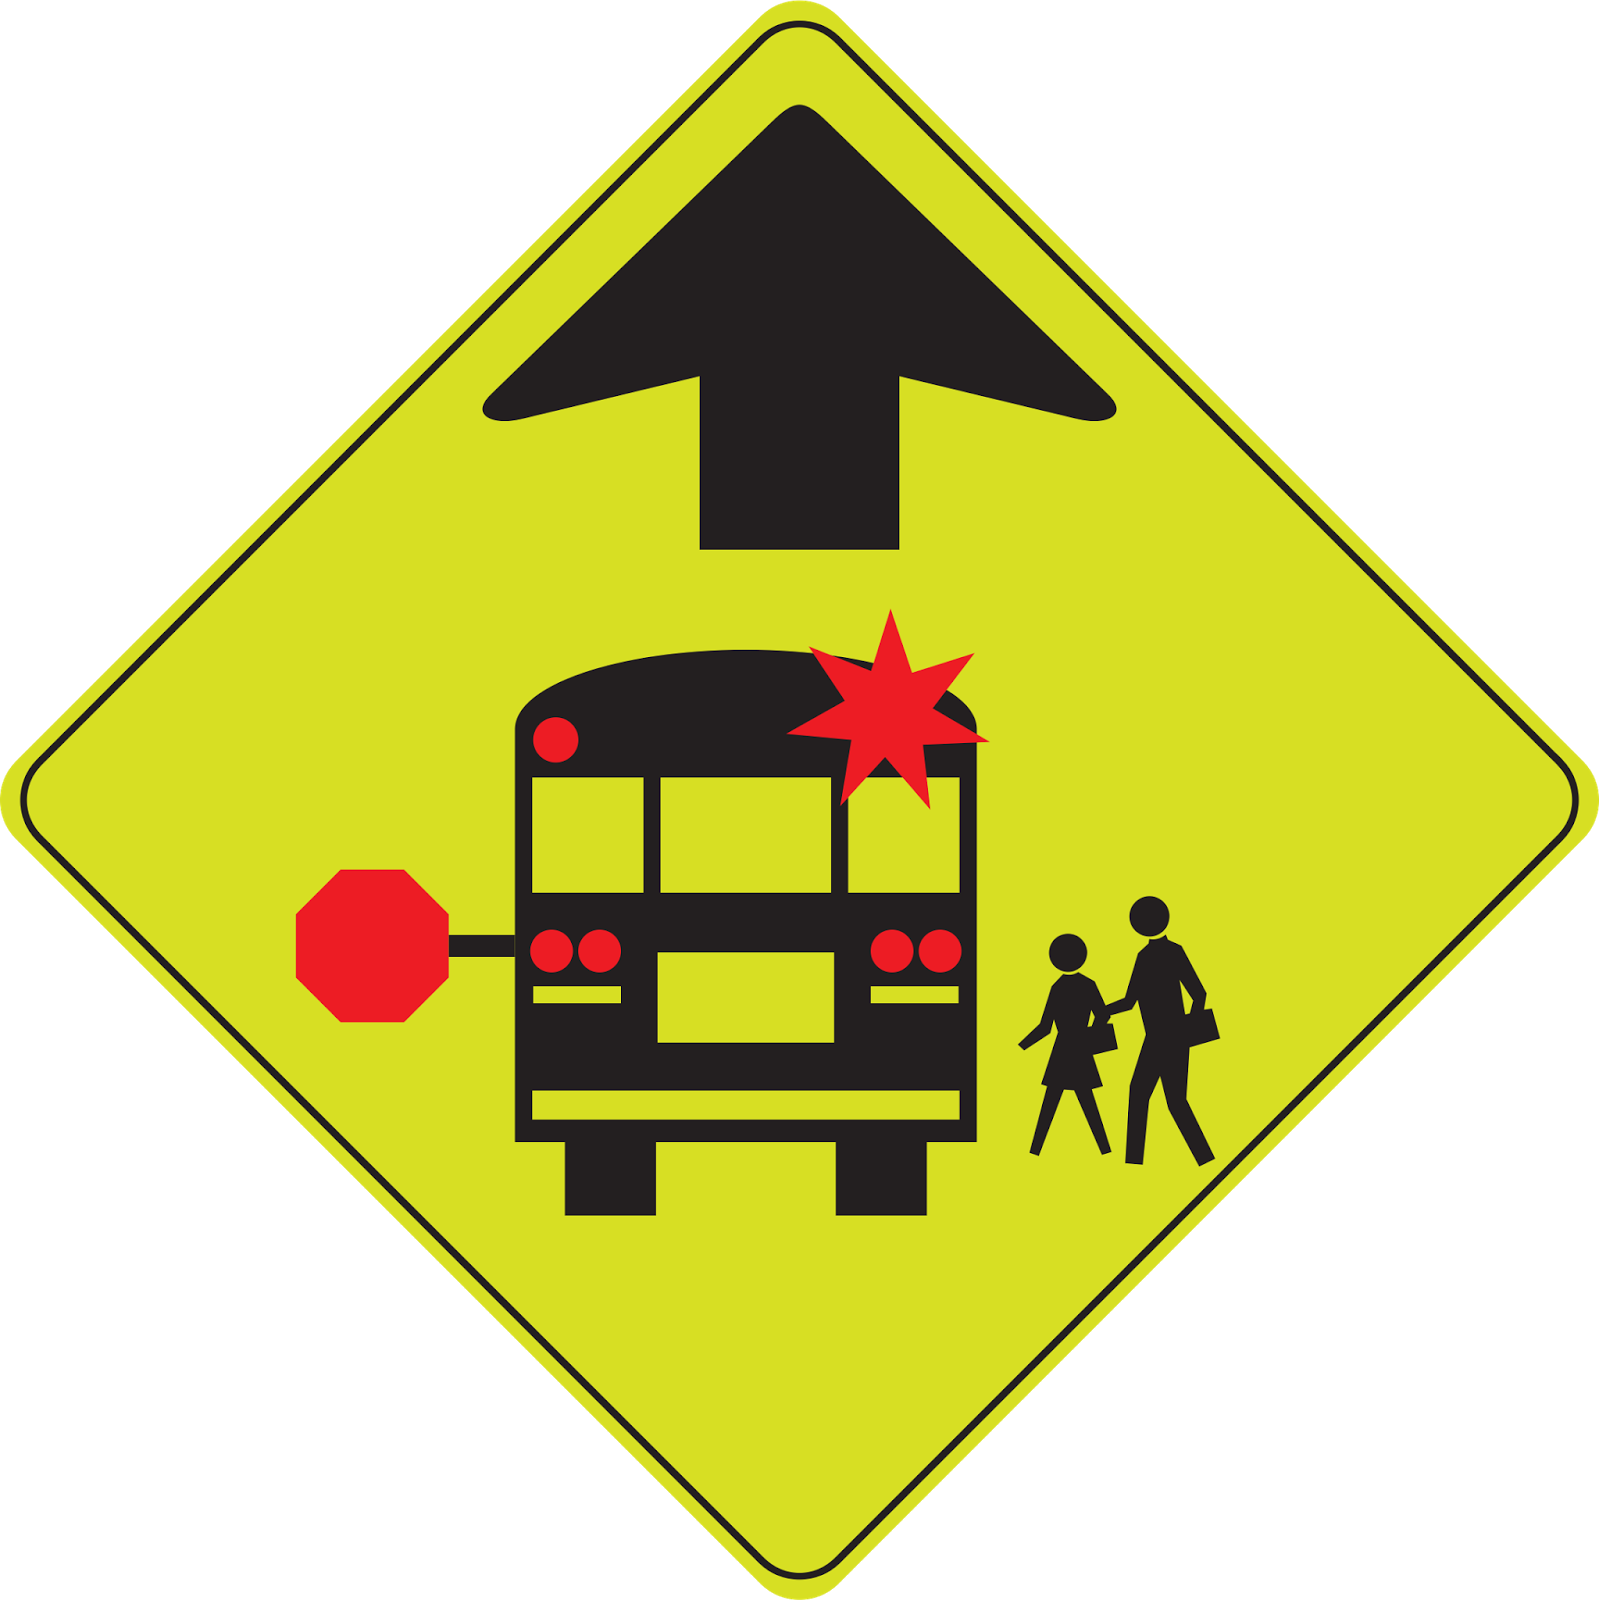 School Bus Stop Ahead - School Bus Stop Ahead Sign (1599x1600)